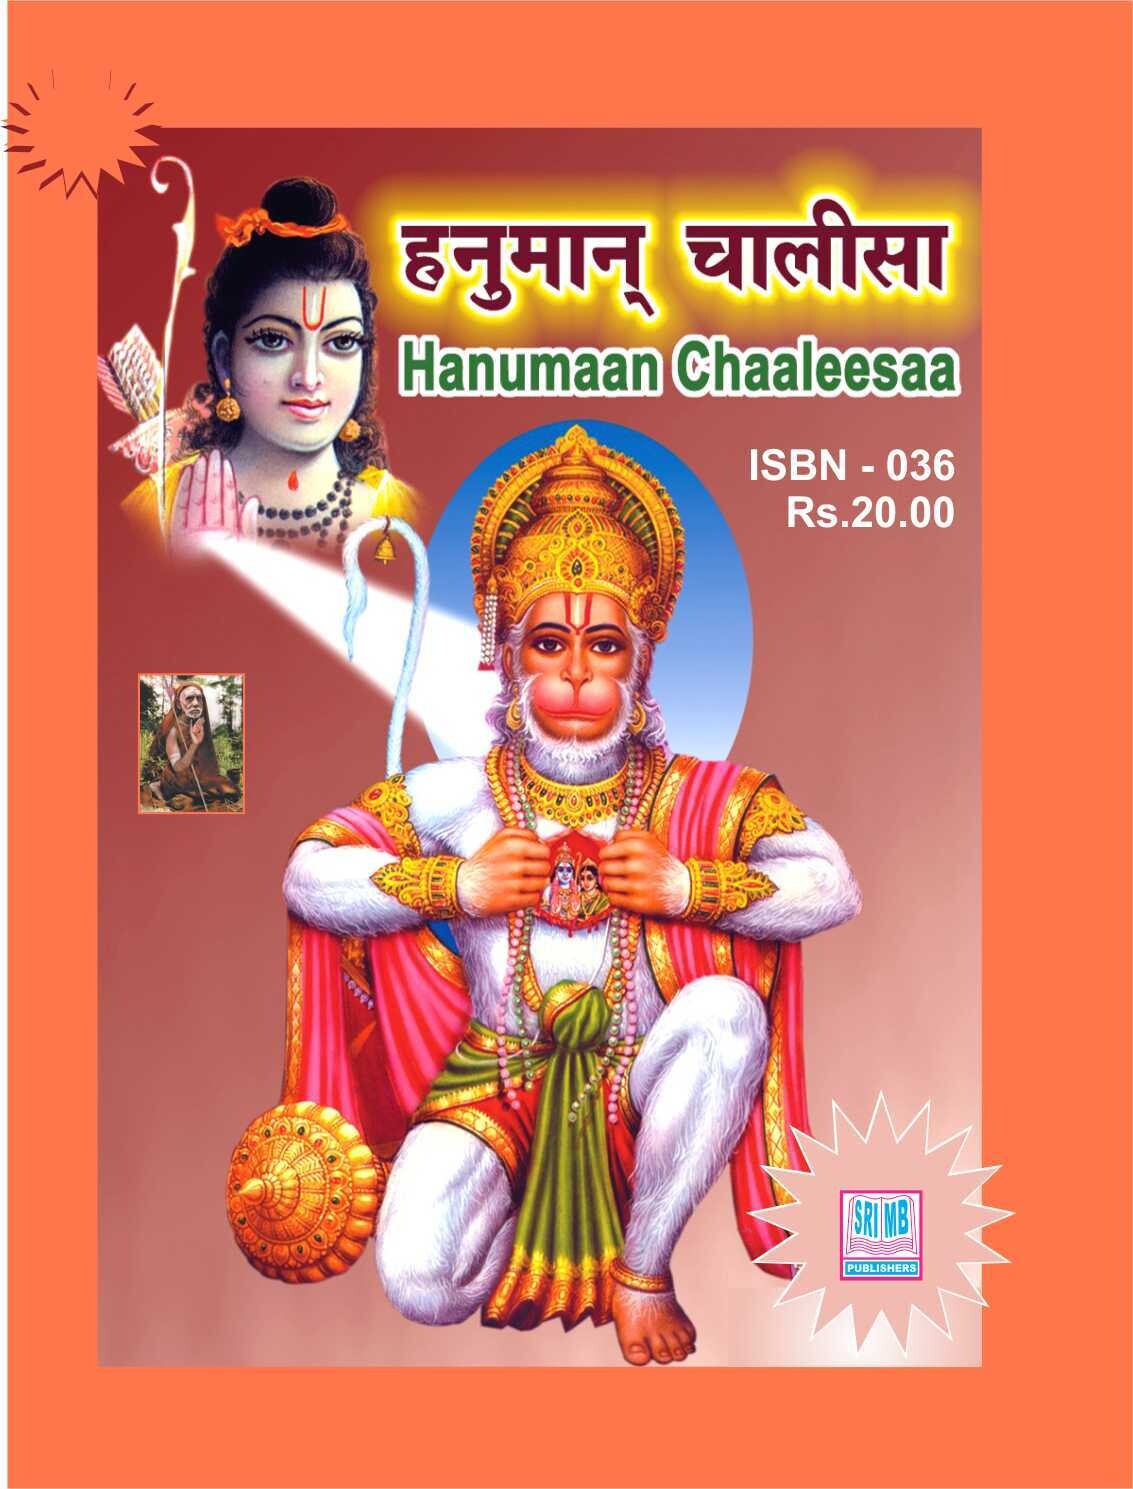 Hanumaan Chaaleesaa (Hindi-ENG with ENG meaning)